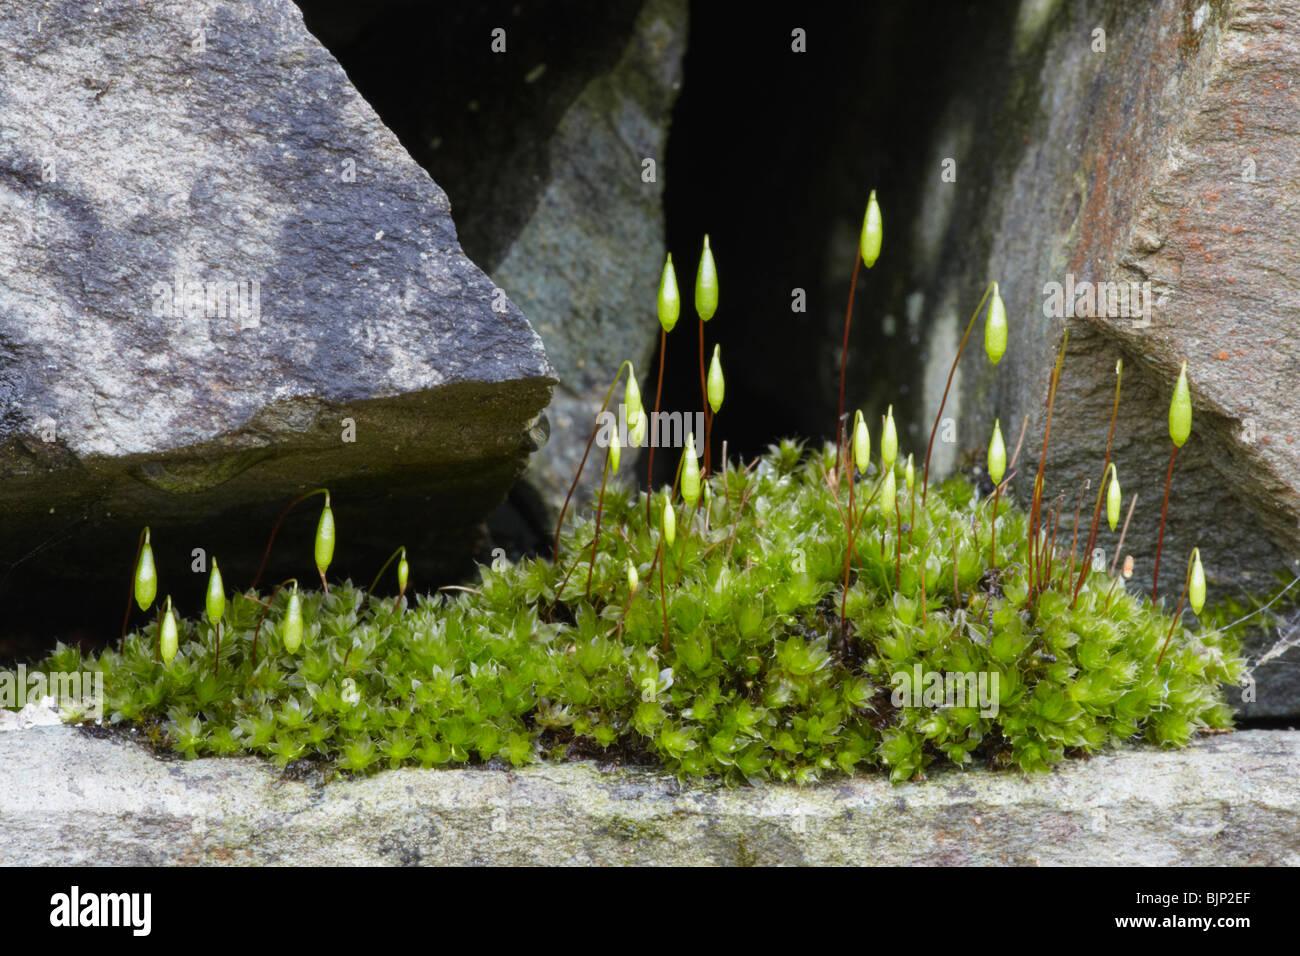 rosca-capilar-moss-bryum-capillare-sobre-una-roca-en-el-distrito-de-los-lagos-bjp2ef.jpg